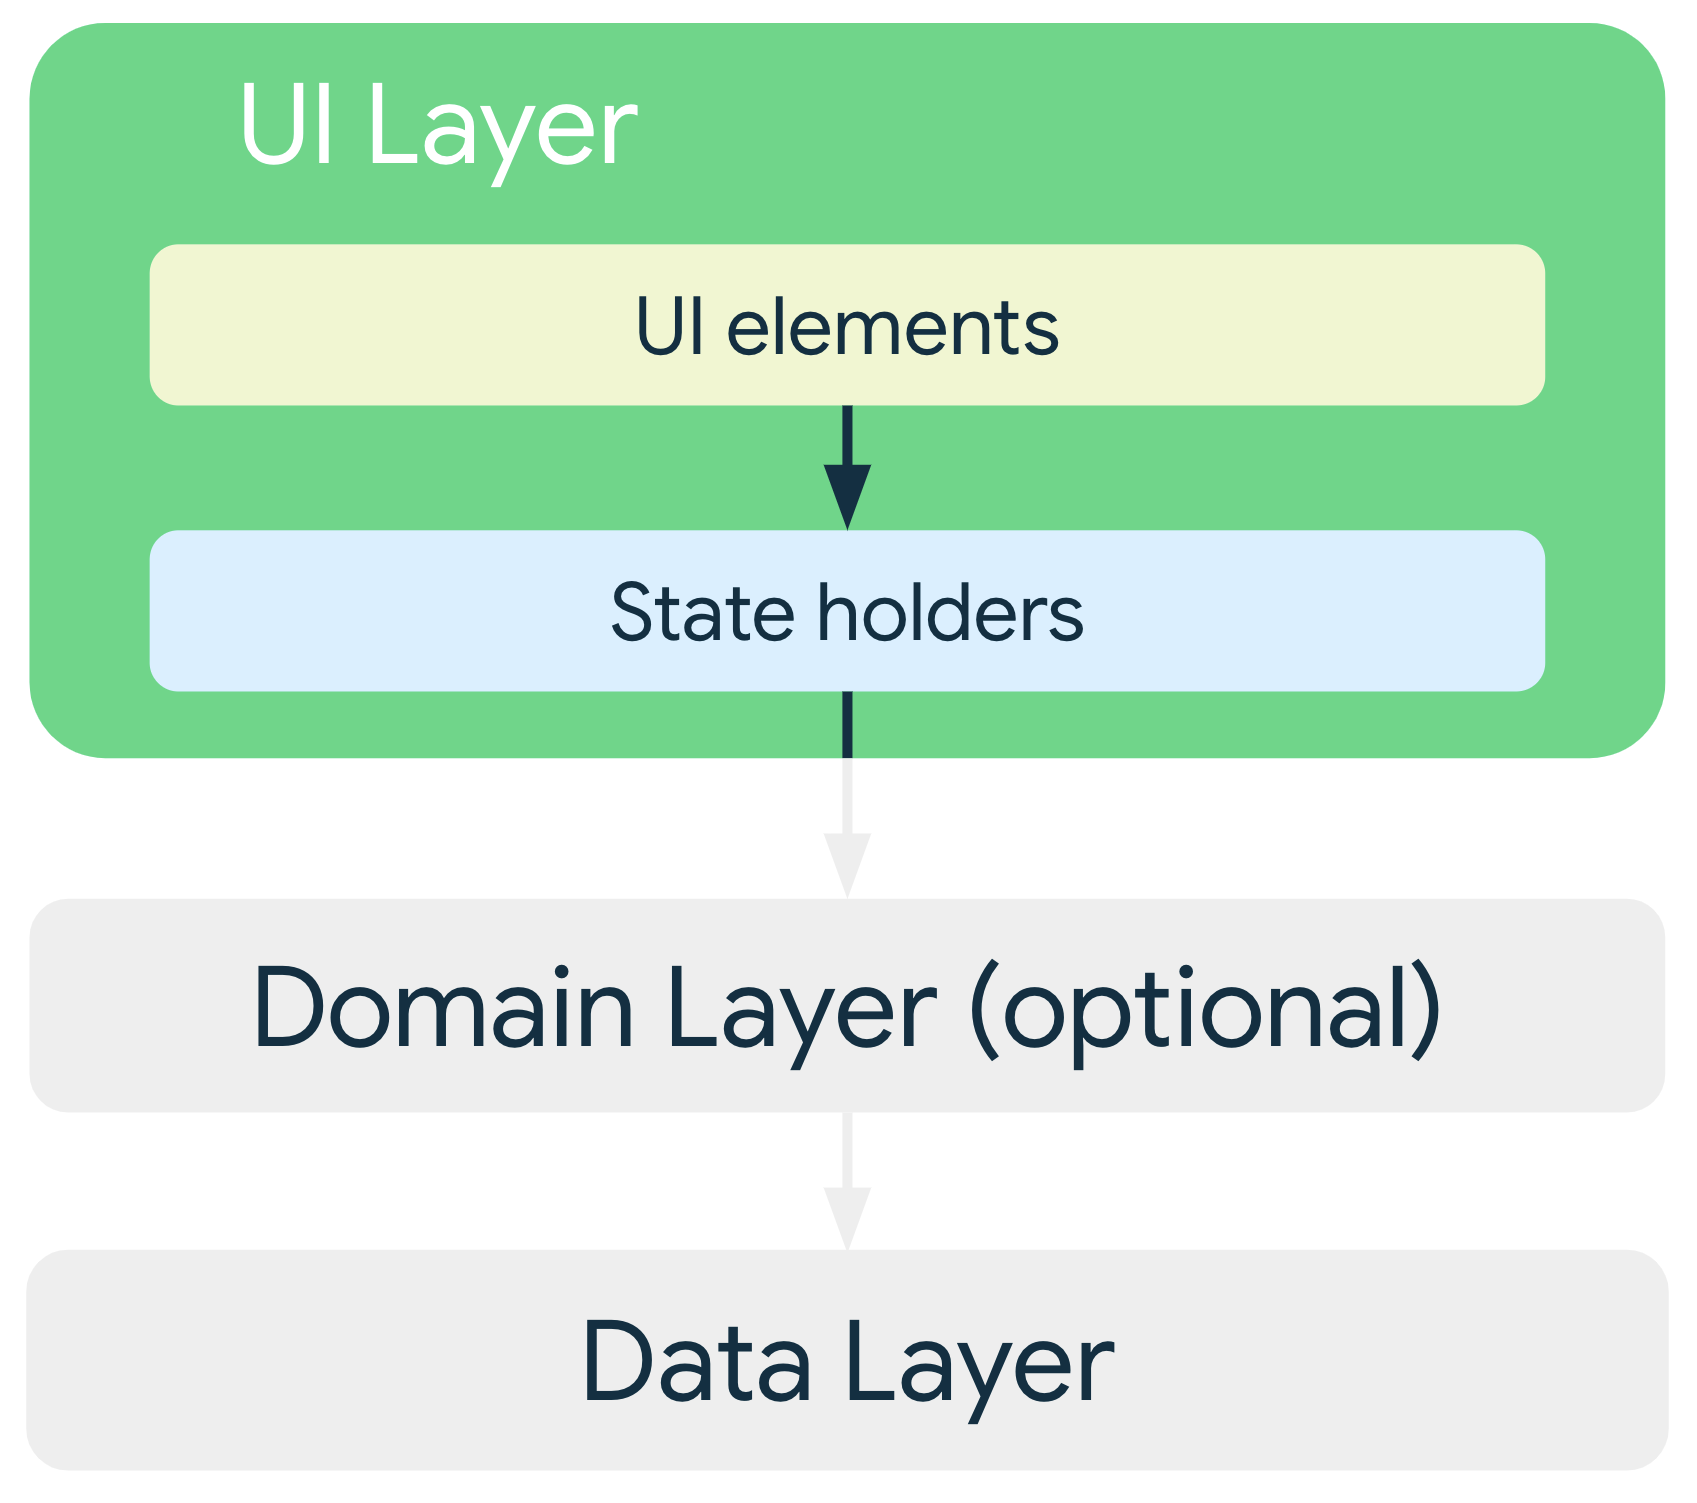 일반 아키텍처에서 UI 레이어의 UI 요소는 상태 홀더에 종속되며, 상태 홀더는 데이터 레이어의 클래스 또는 선택적 도메인 레이어의 클래스에 종속됩니다.